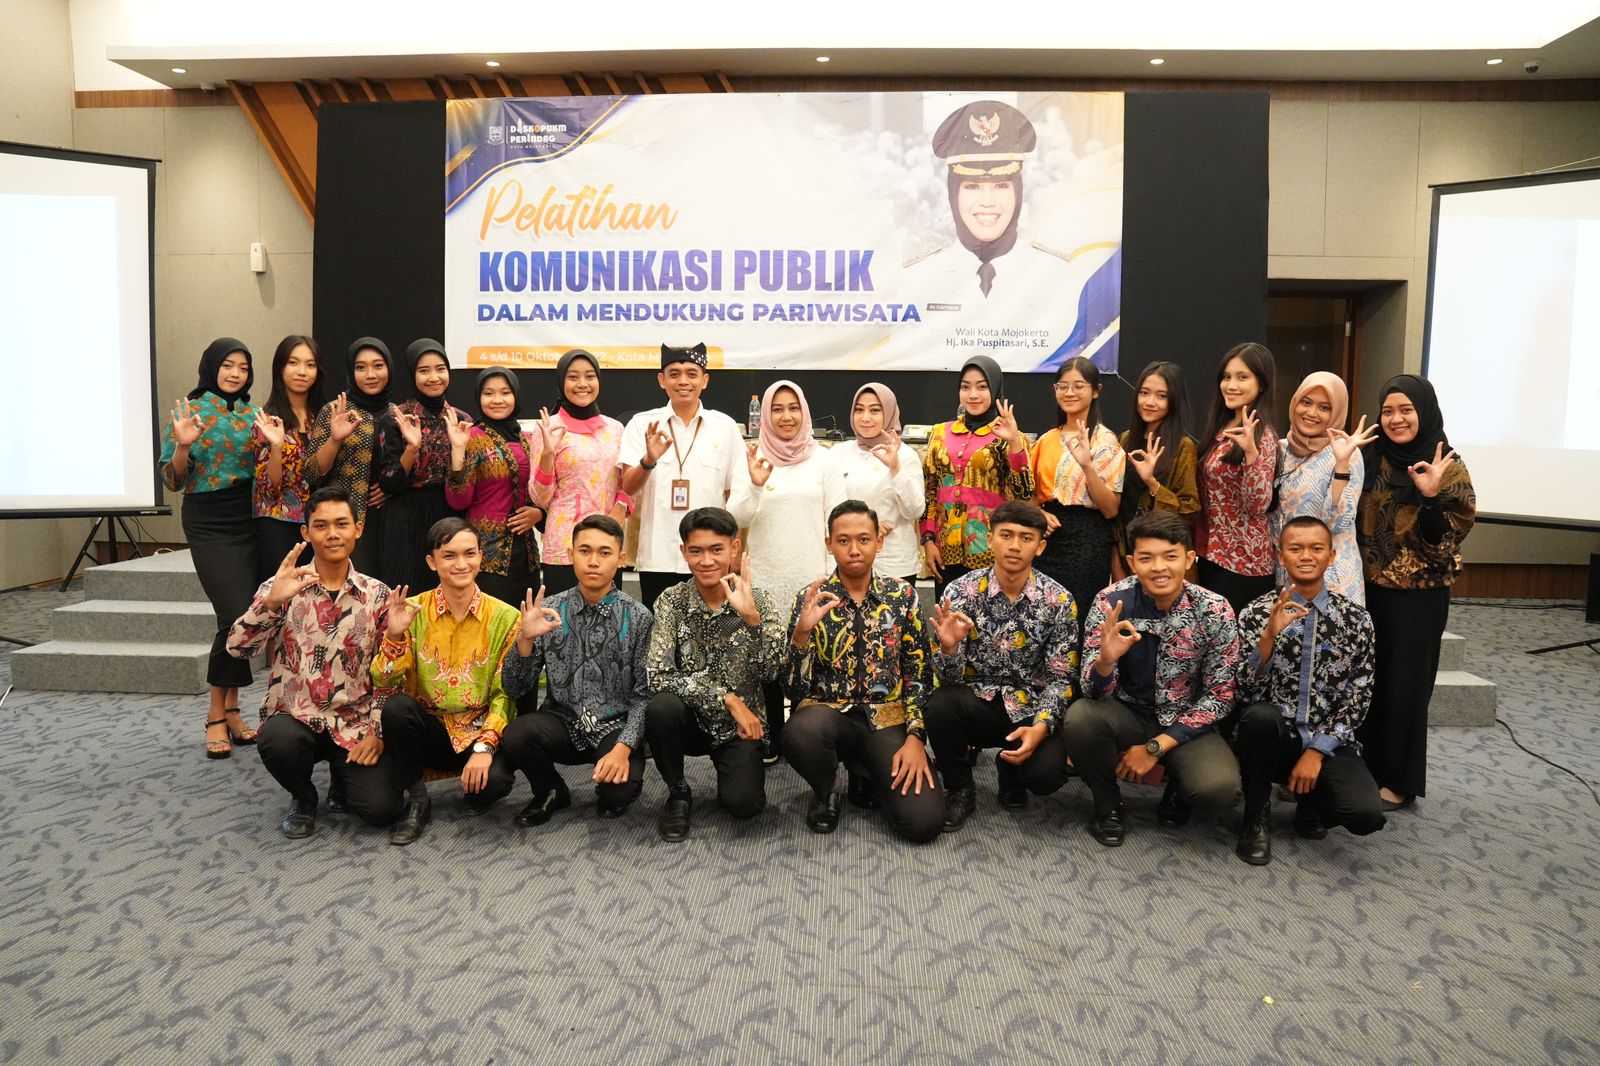 20 Finalis Duta Batik Kota Mojokerto Dapat Pelatihan Komunikasi Publik  